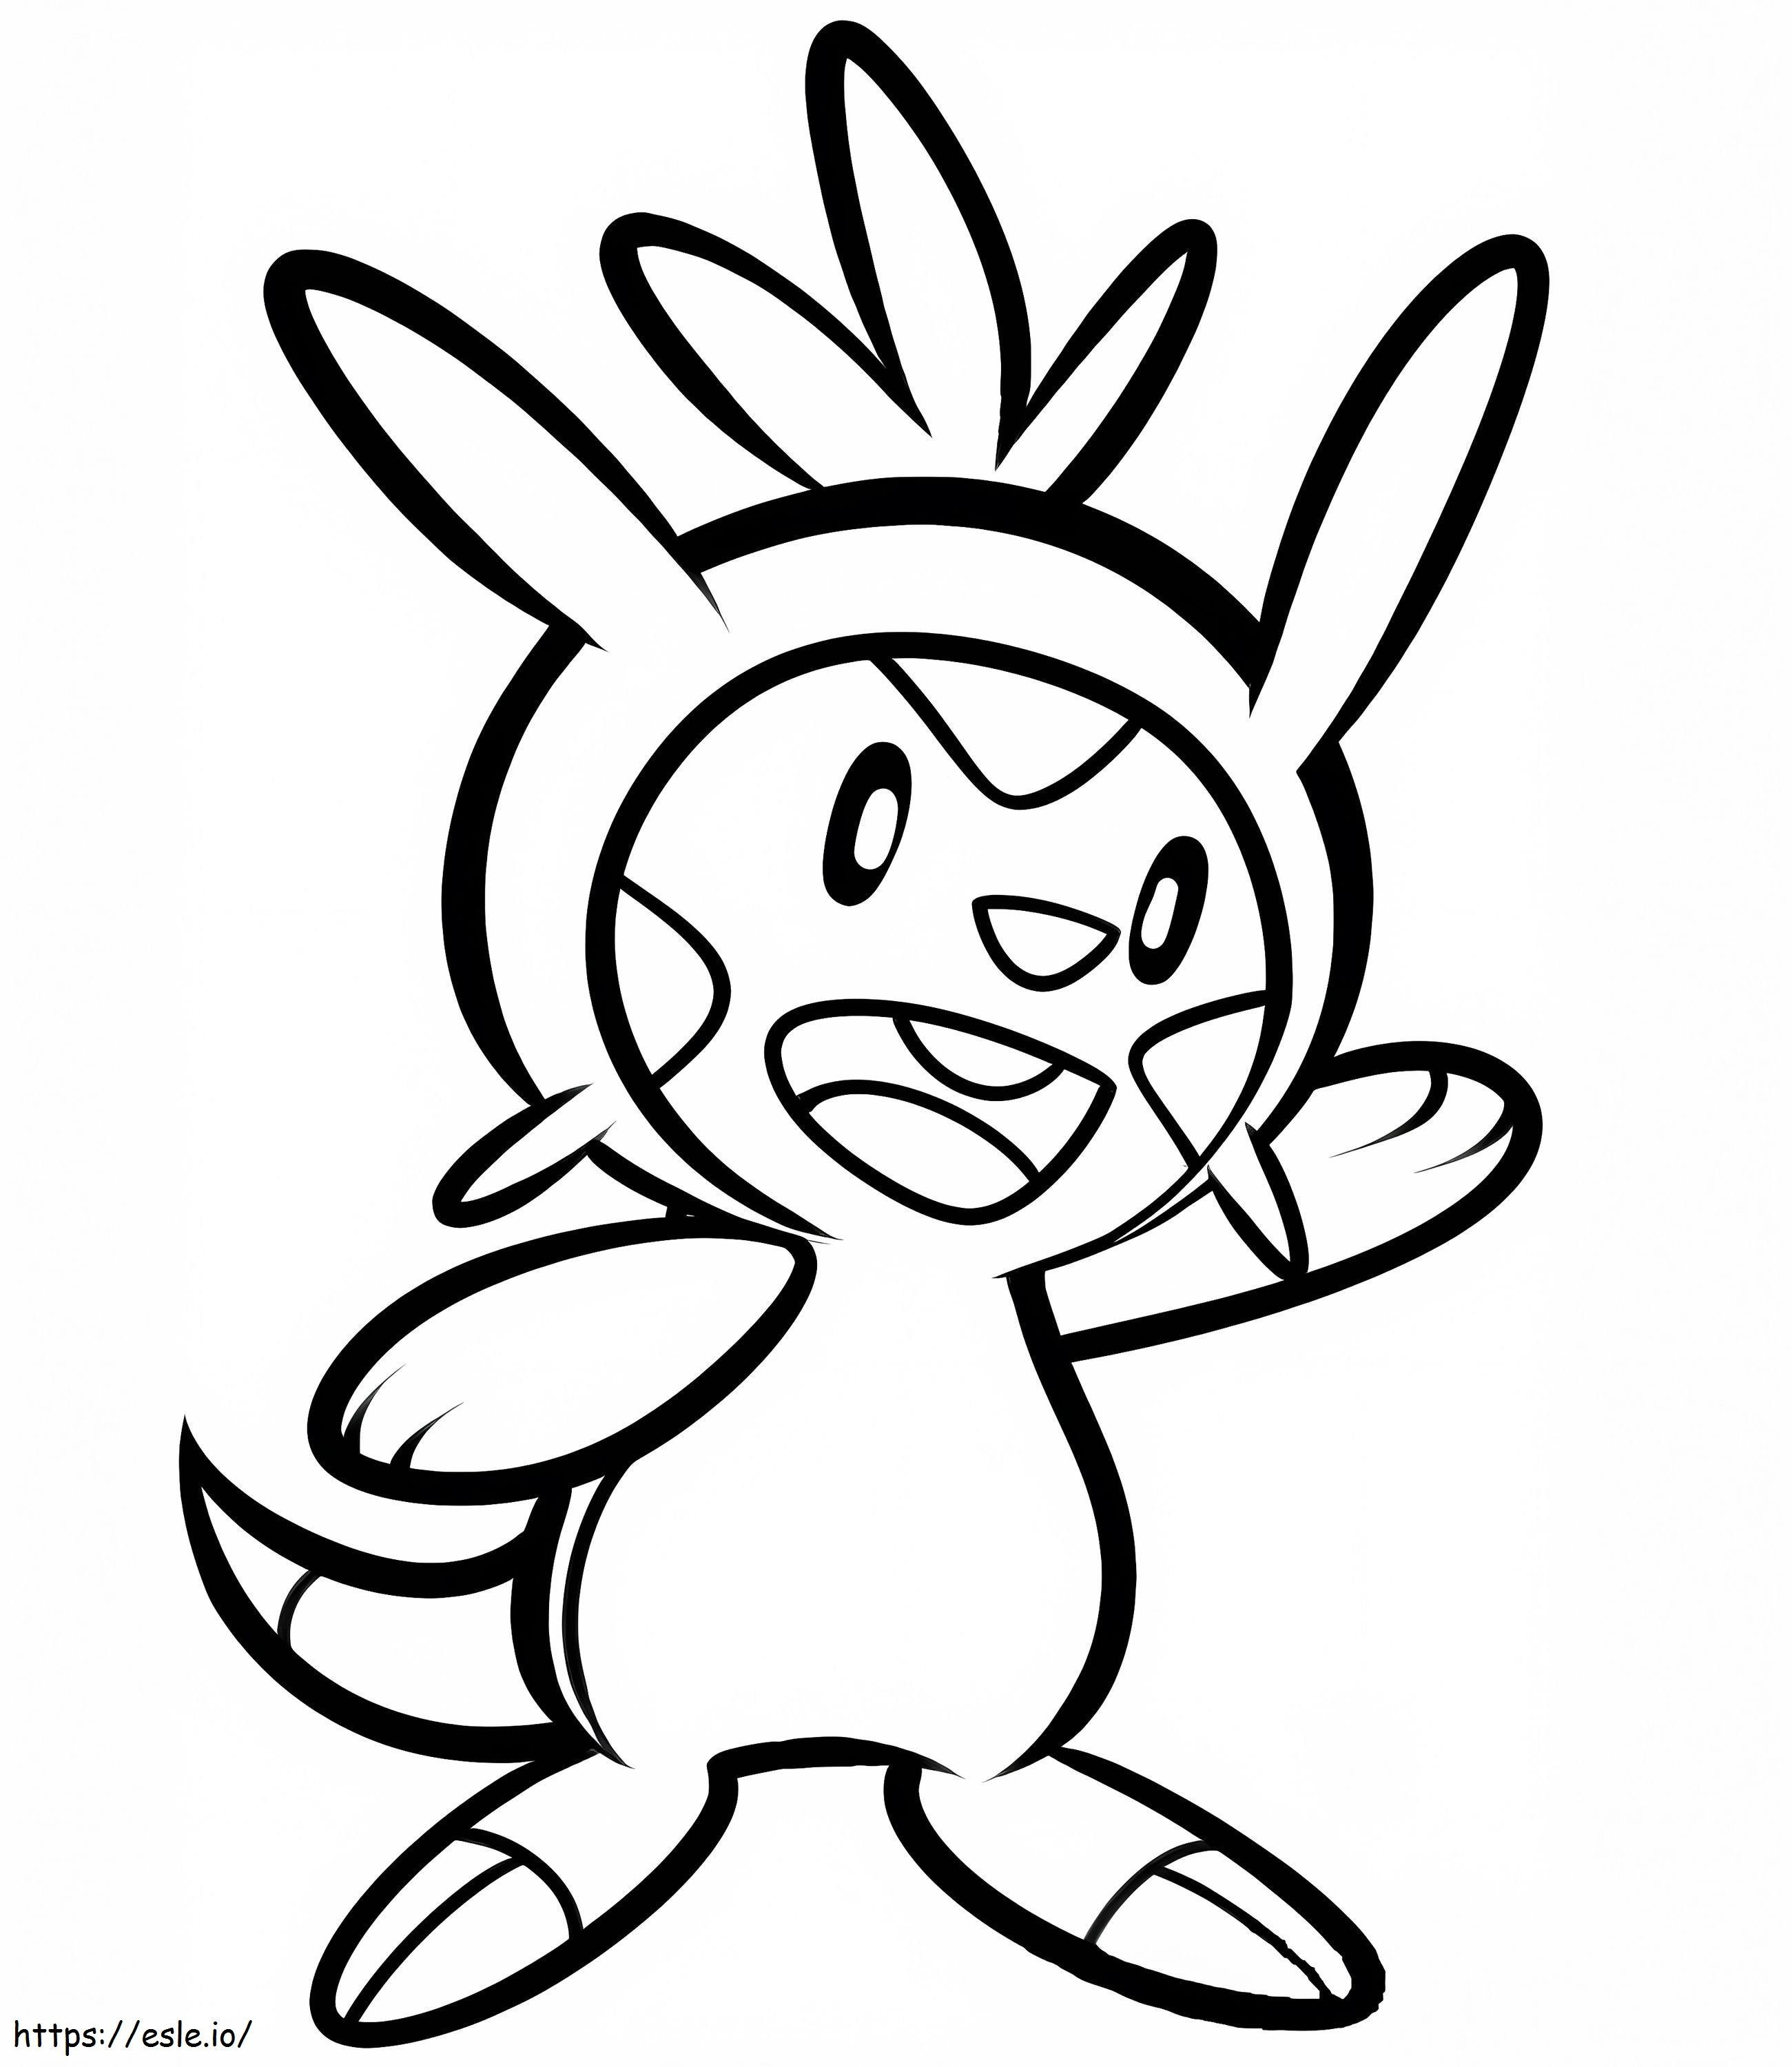 Coloriage Pokémon Chespin QG à imprimer dessin